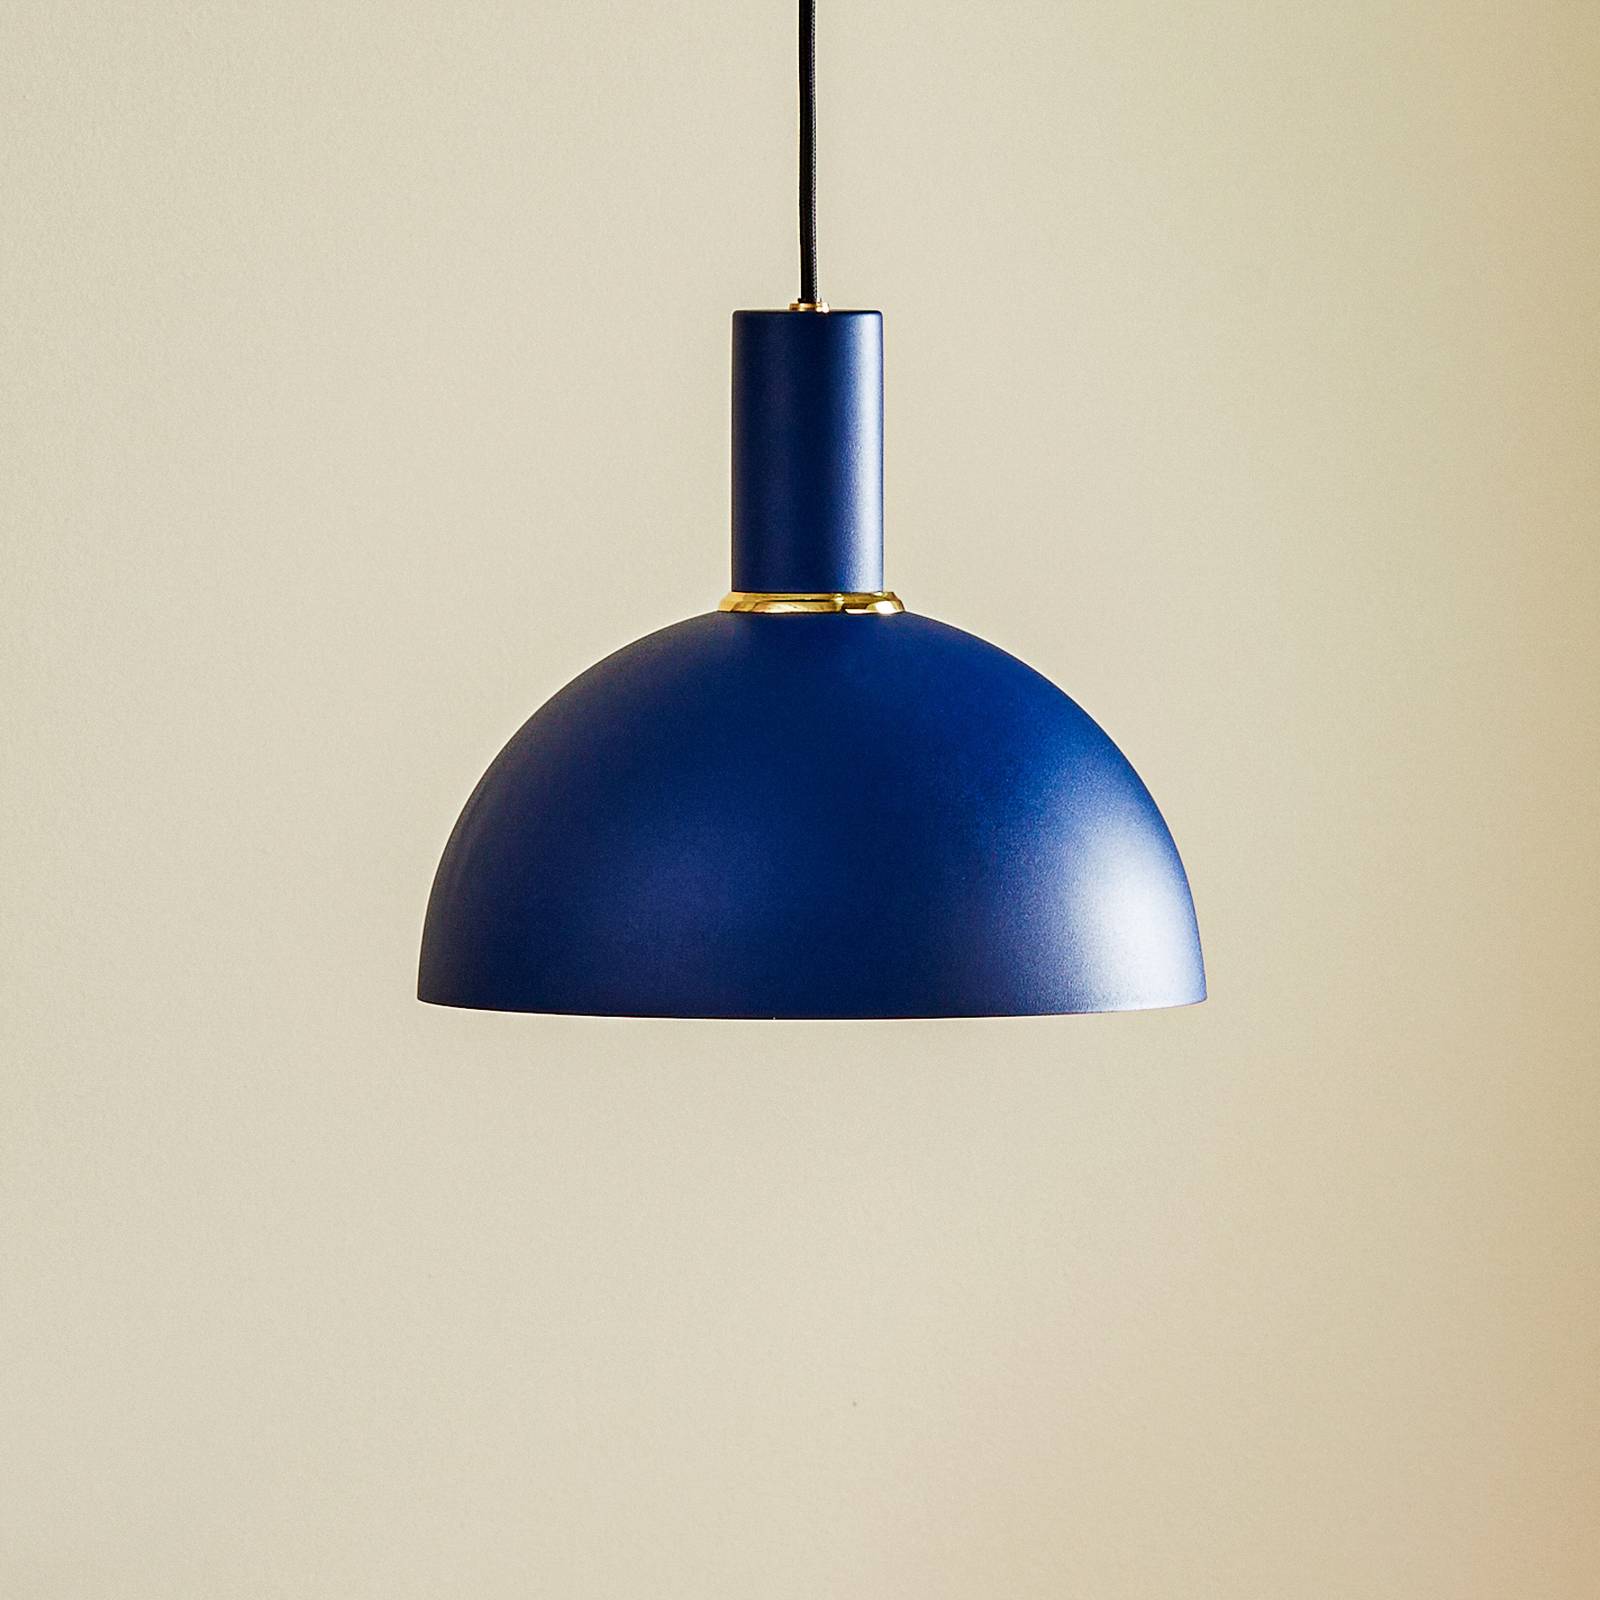 Selma hængelampe, 1 lyskilde, blå, Ø 22 cm